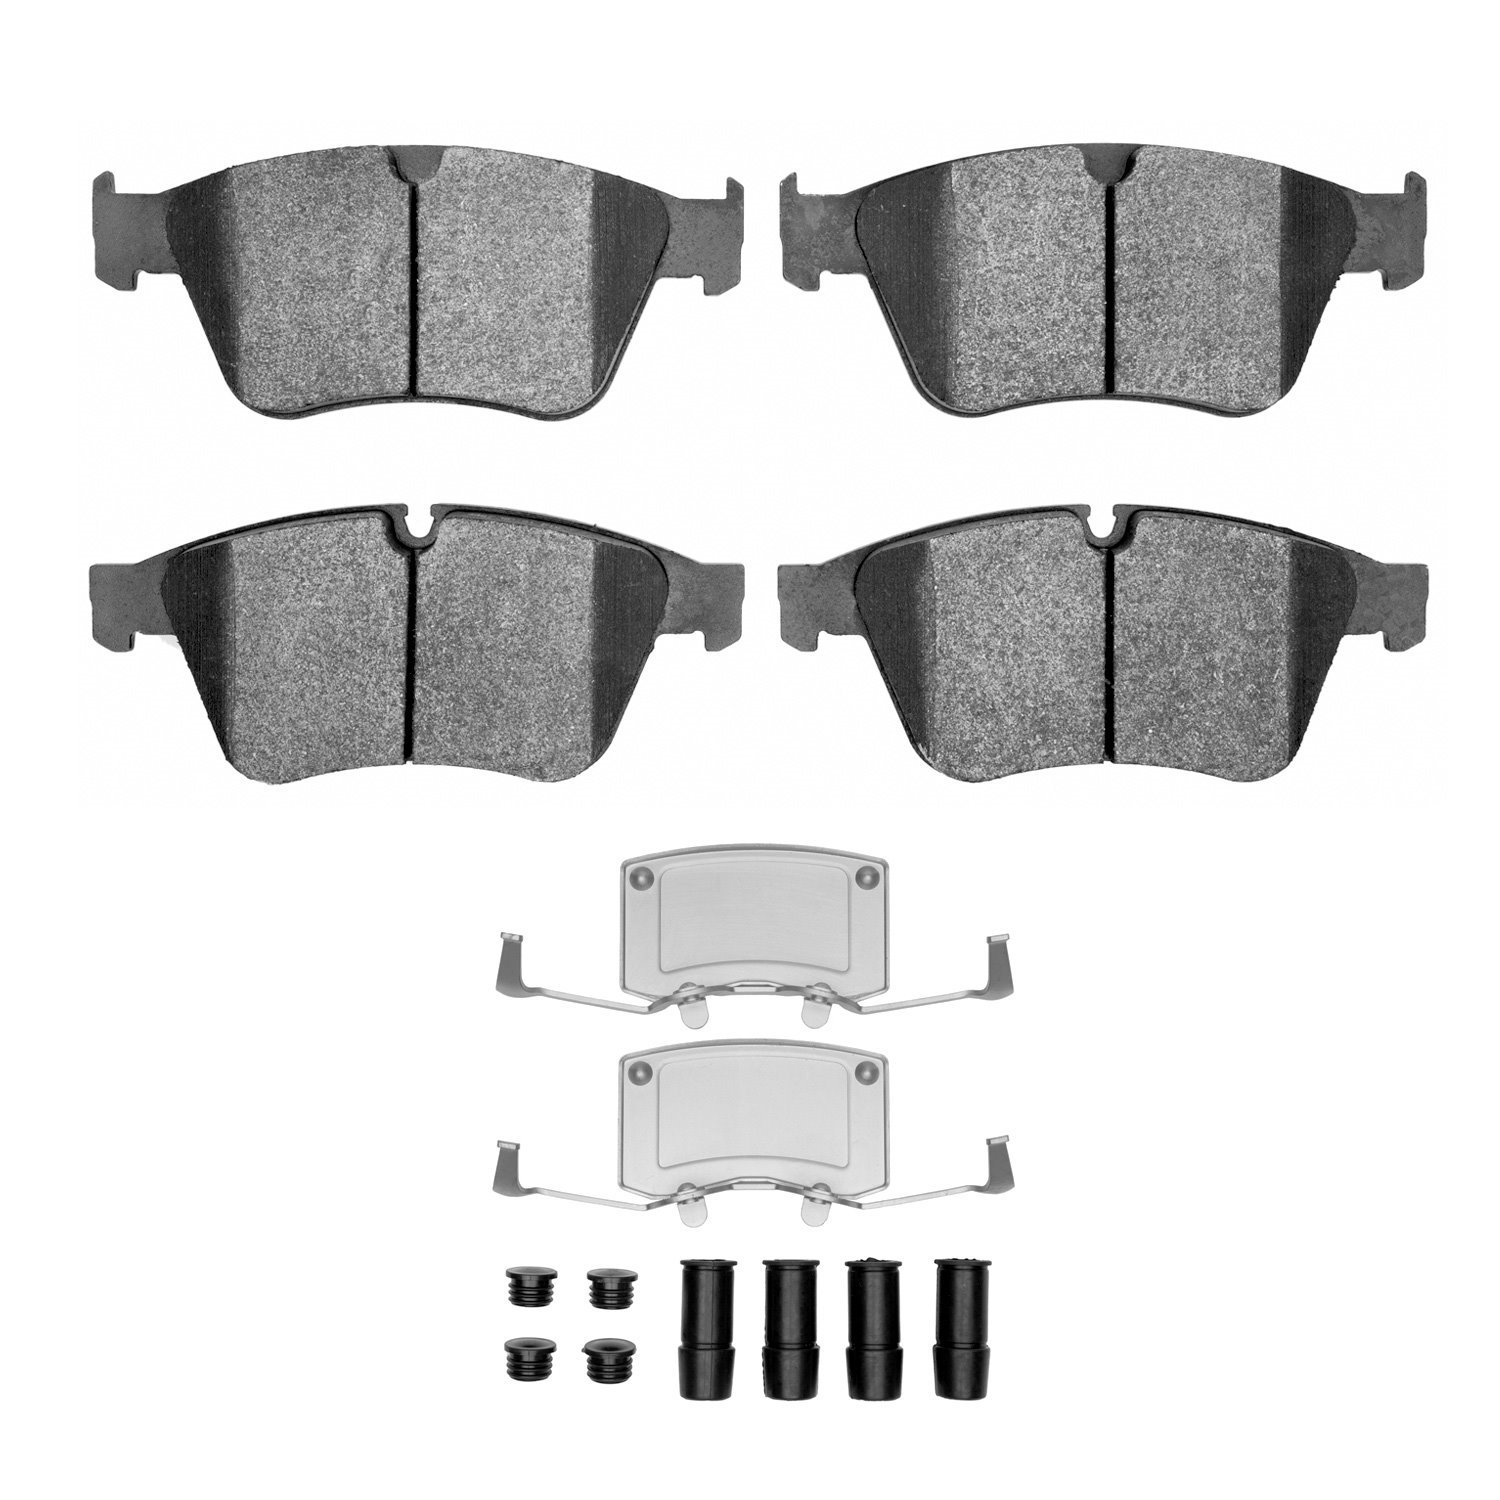 1311-1271-01 3000-Series Semi-Metallic Brake Pads & Hardware Kit, 2007-2011 Mercedes-Benz, Position: Front